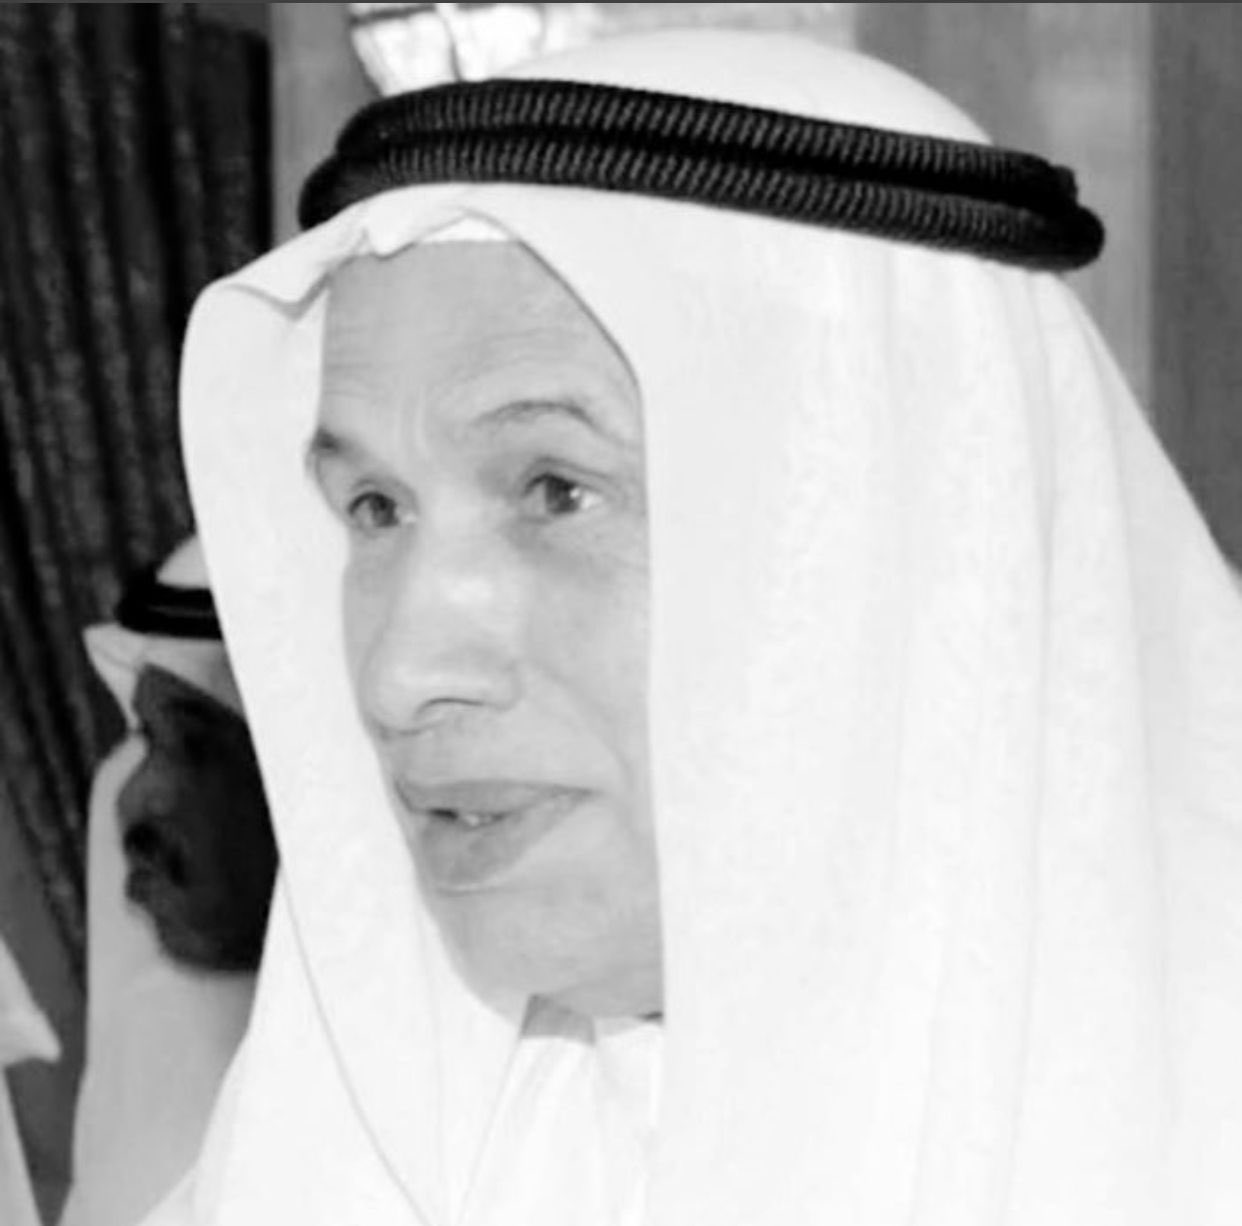 بعد وفاته .. السيرة الذاتية لرجل الأعمال الإماراتي ماجد الفطيم صاحب متاجر كارفور